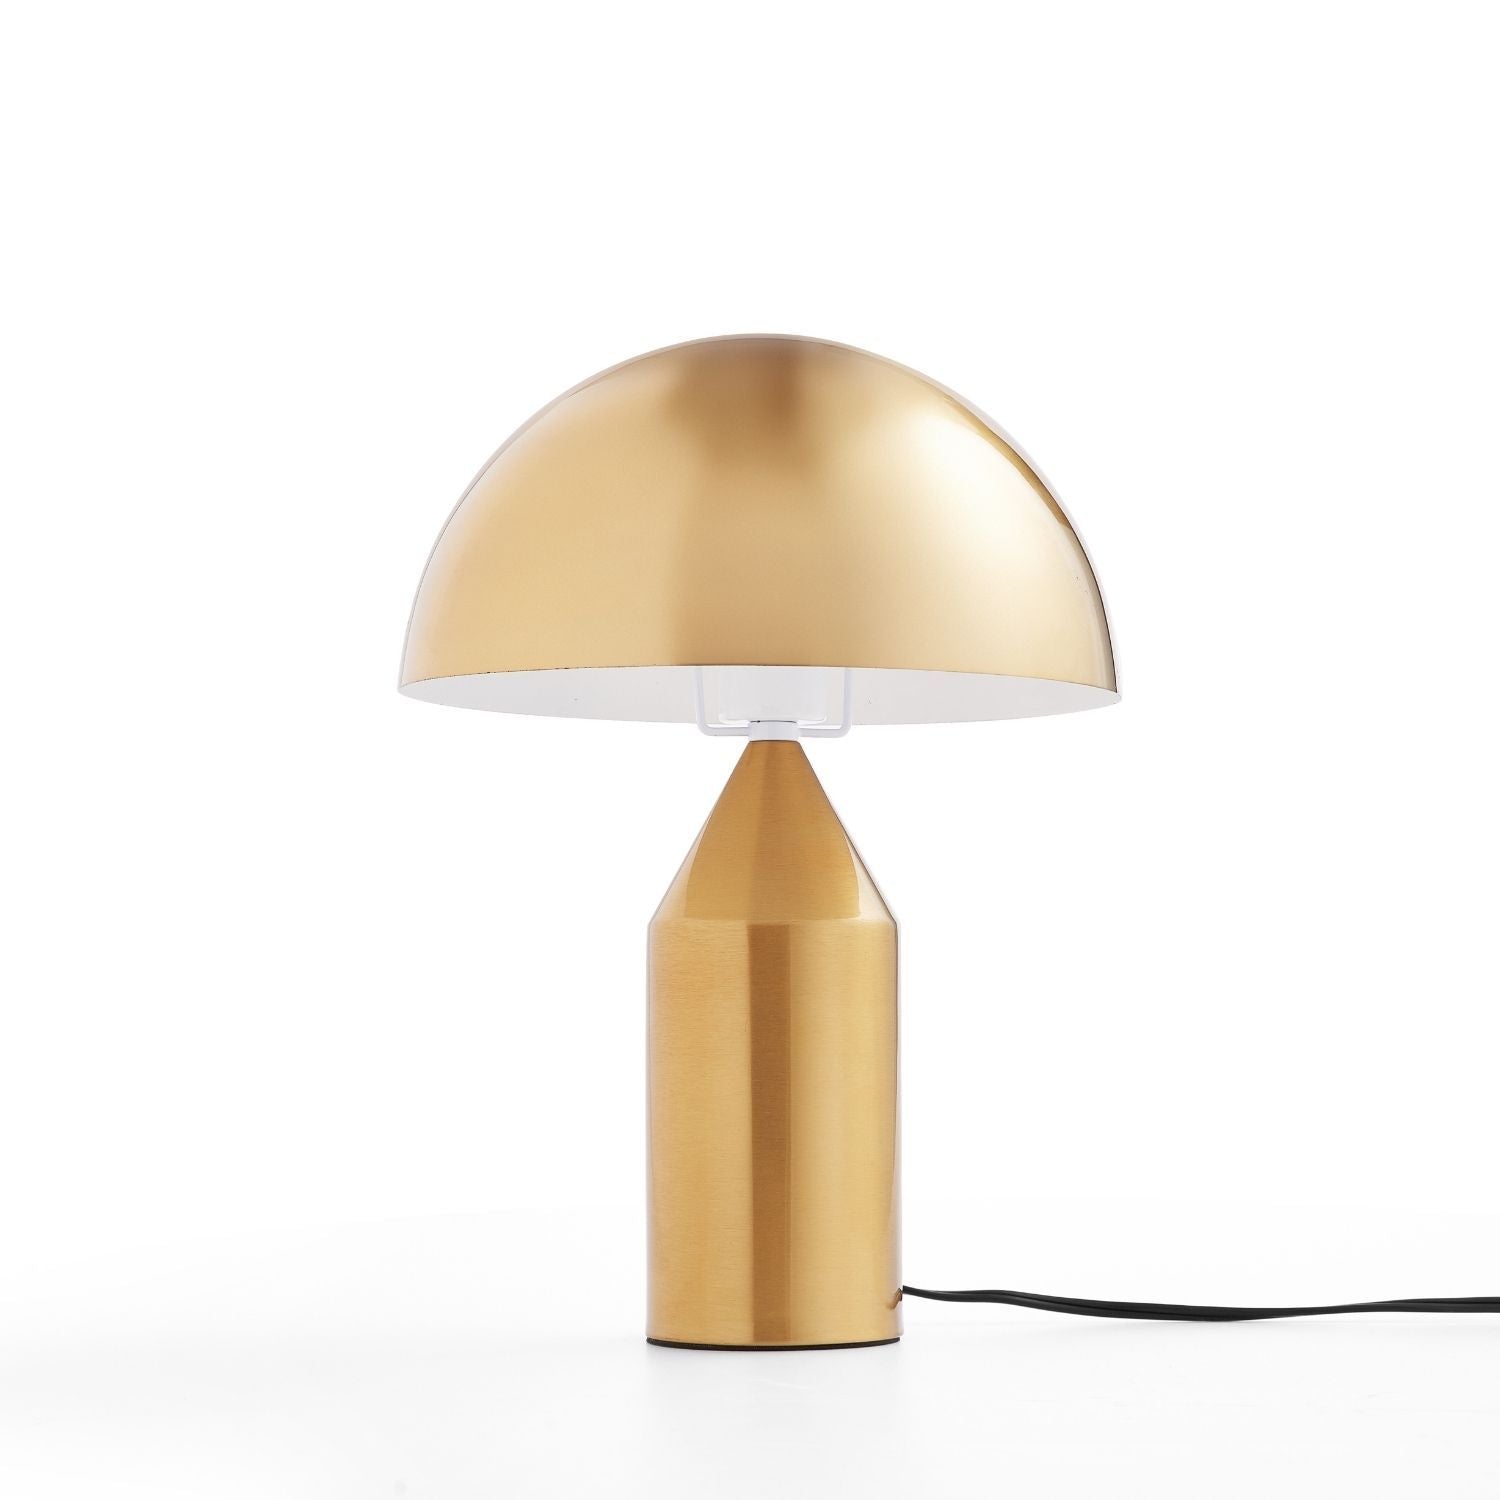 Shroom Lamp Lamp Mario Capasa 